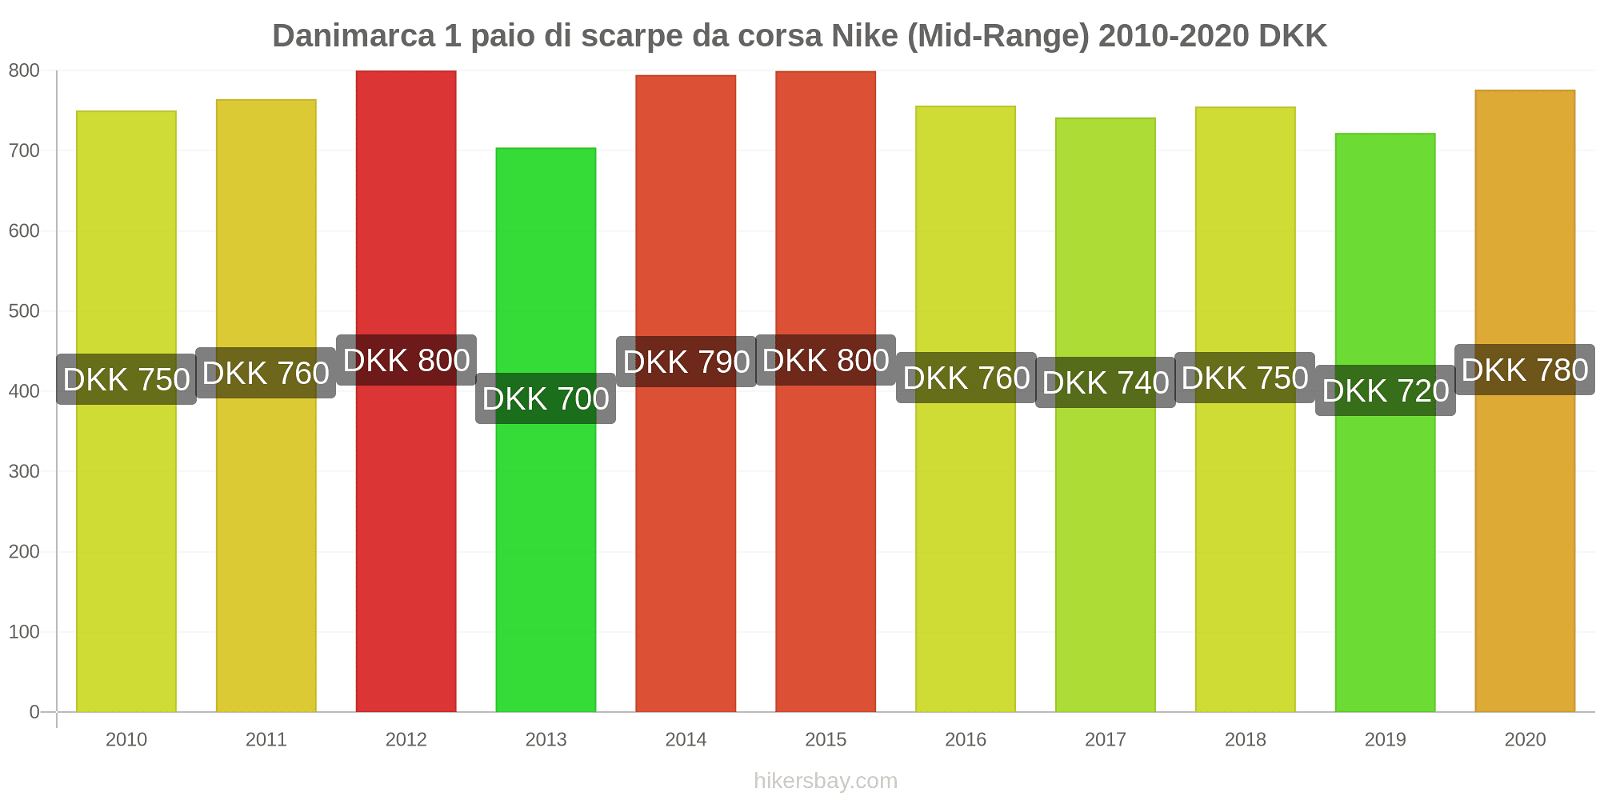 Danimarca variazioni di prezzo 1 paio di scarpe da corsa Nike (simile) hikersbay.com